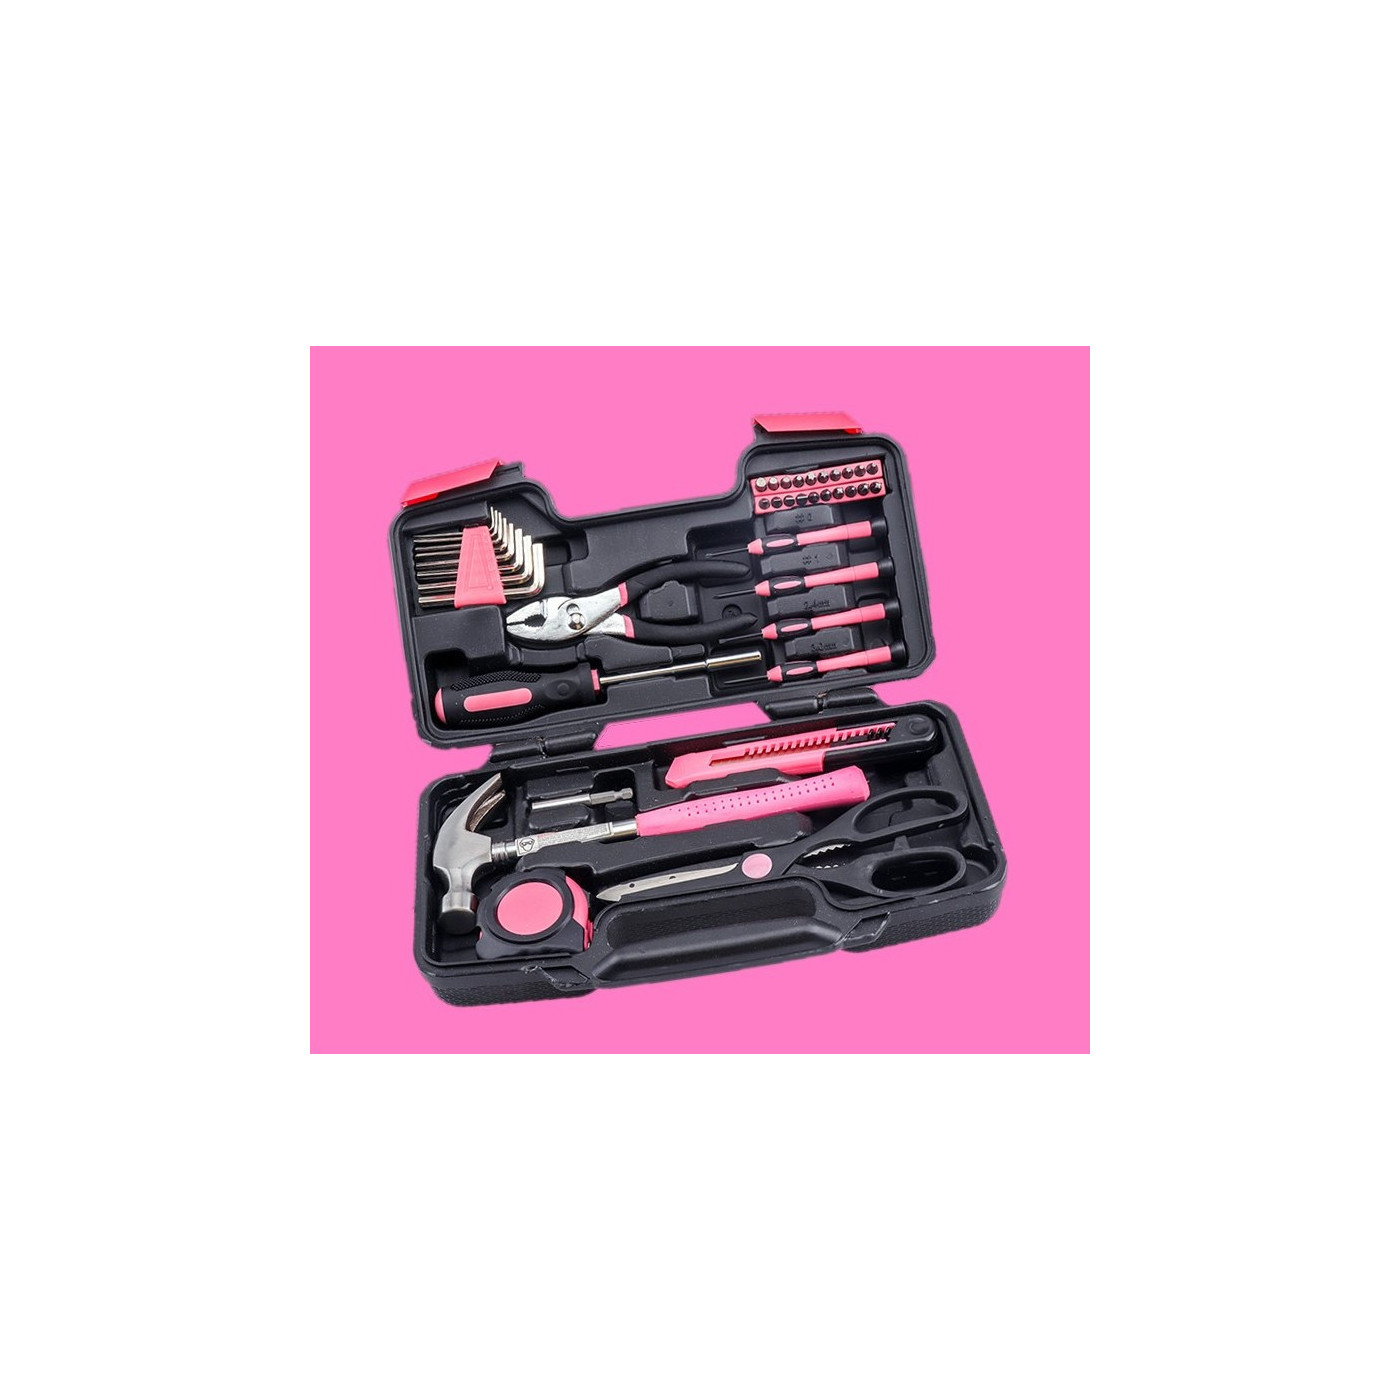 Schönes Geschenk für Frauen: Werkzeugset rosa